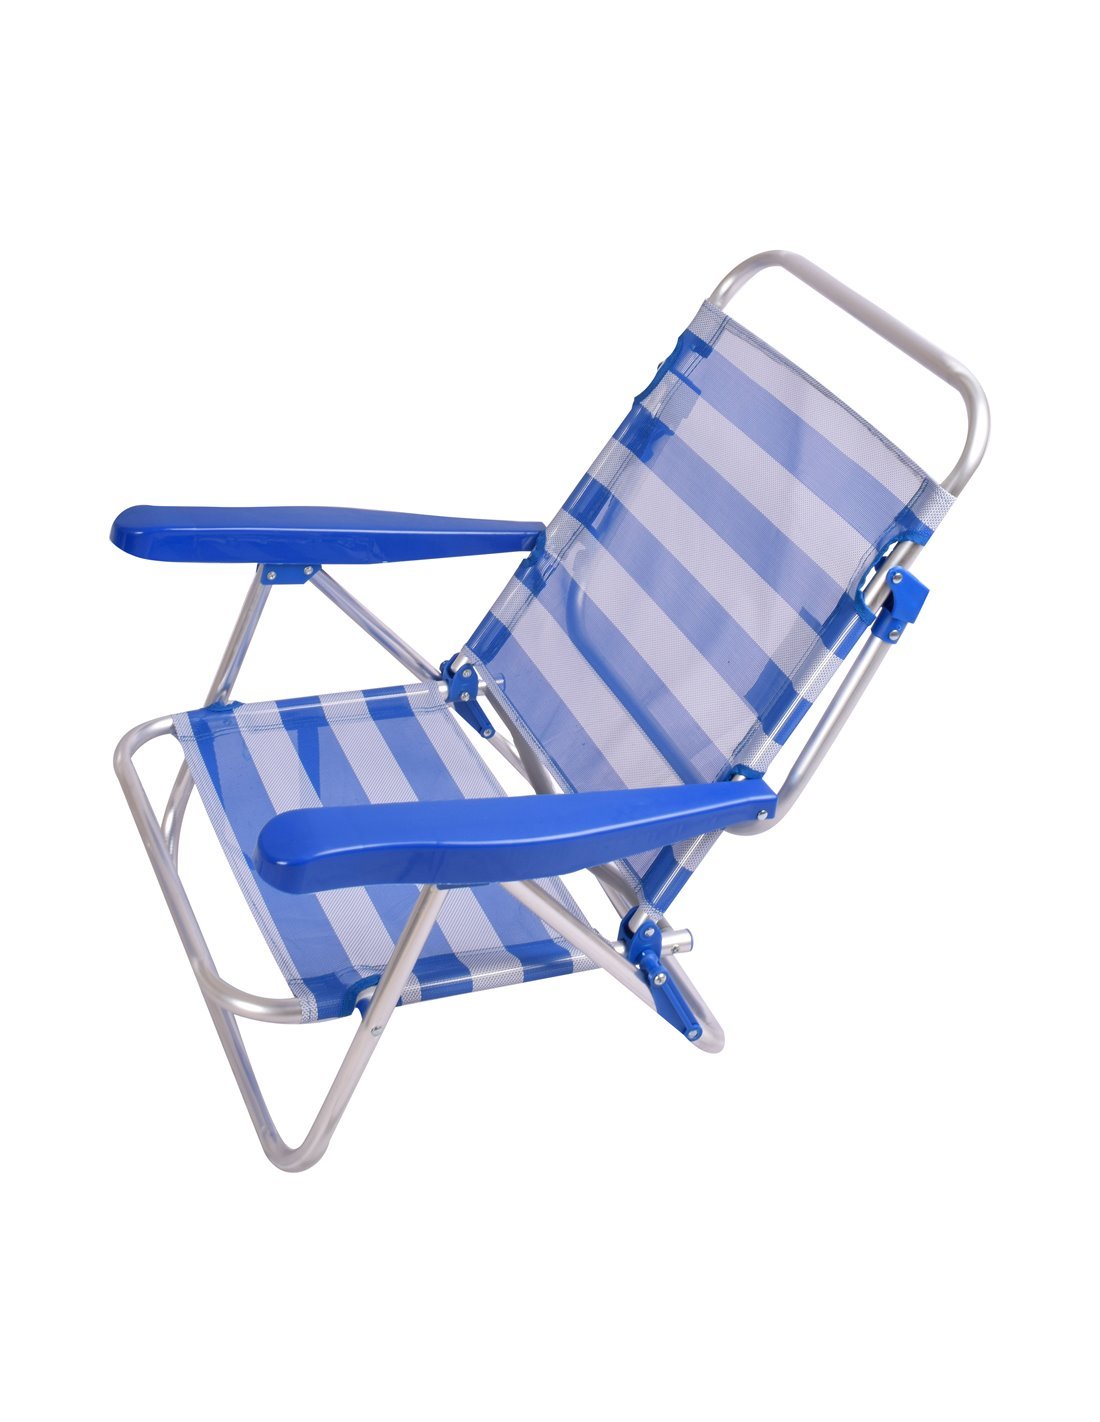 Las mejores silllas de playa plegables